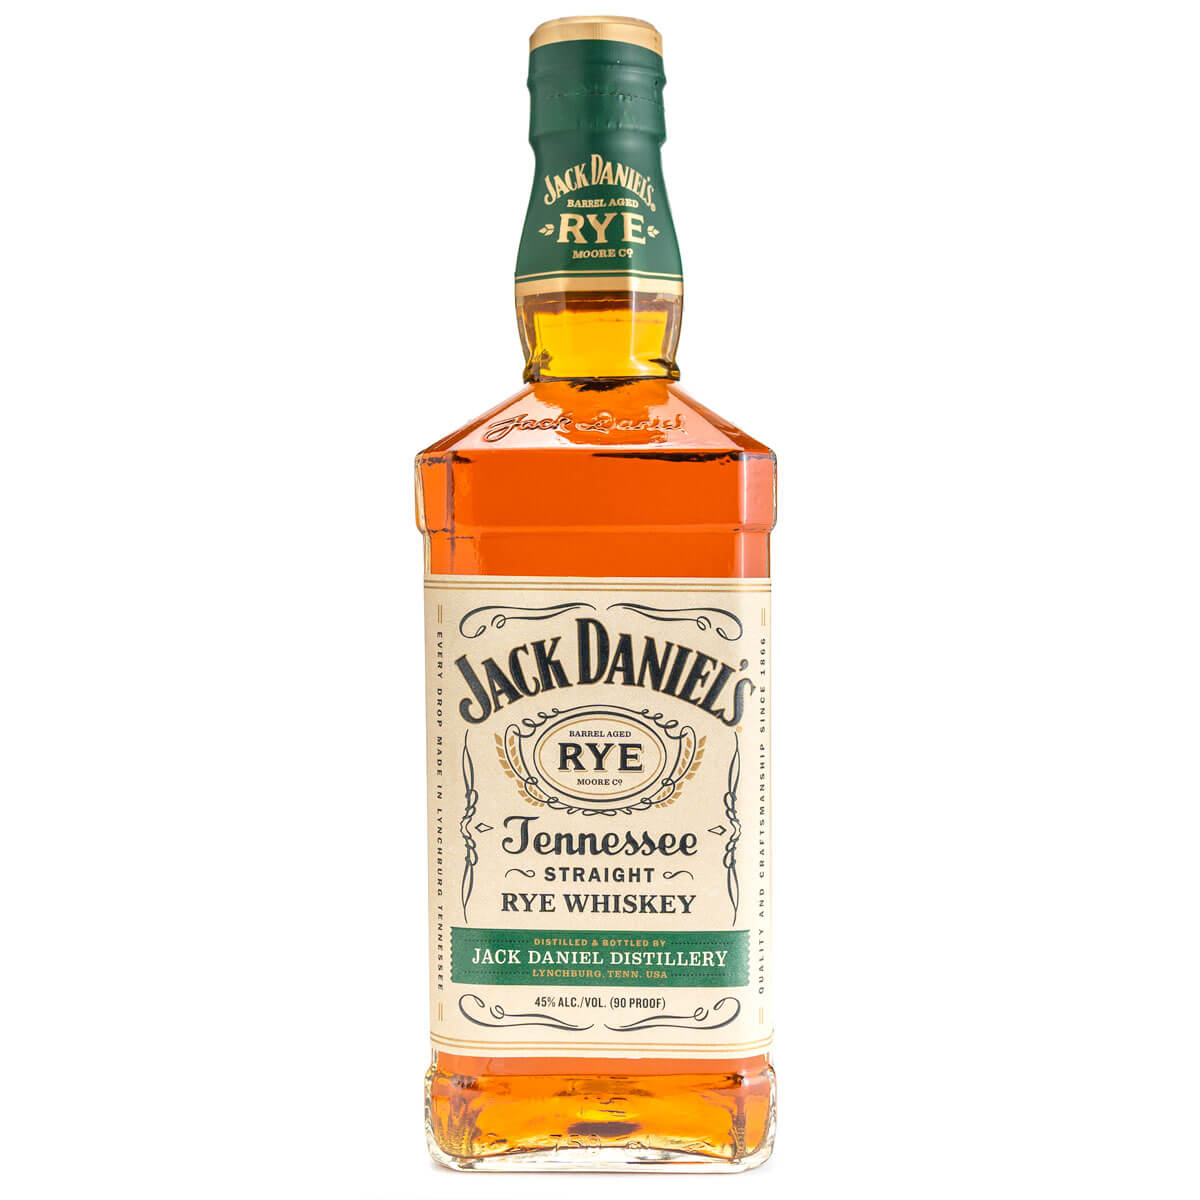 Jack Daniel's Tennessee Rye bottle